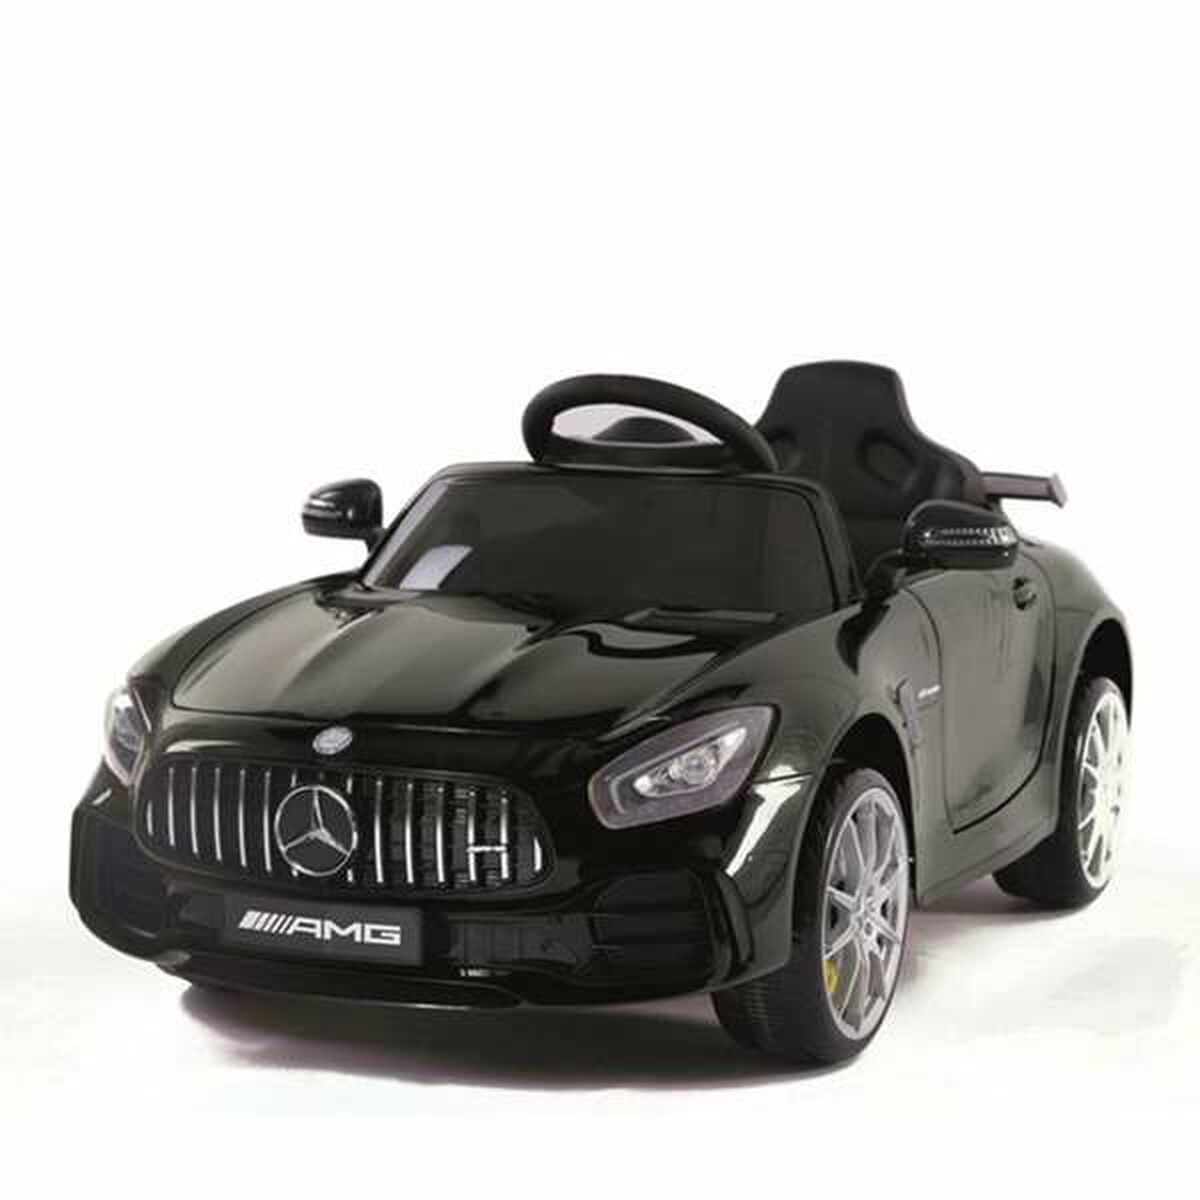 Coche eléctrico Mercedes para niño por 139€